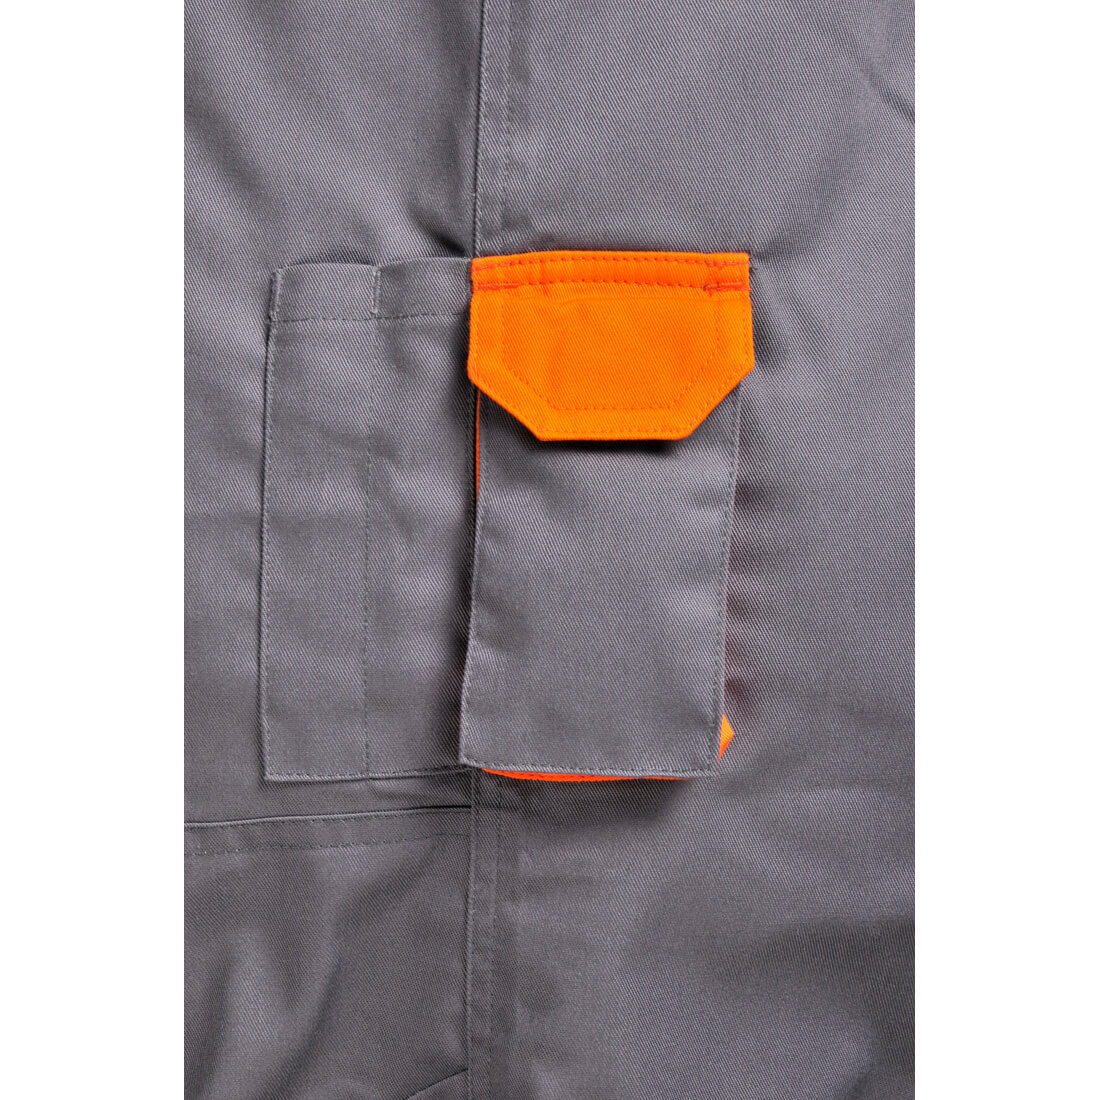 Pantalon Texo Contrast - Les vêtements de protection